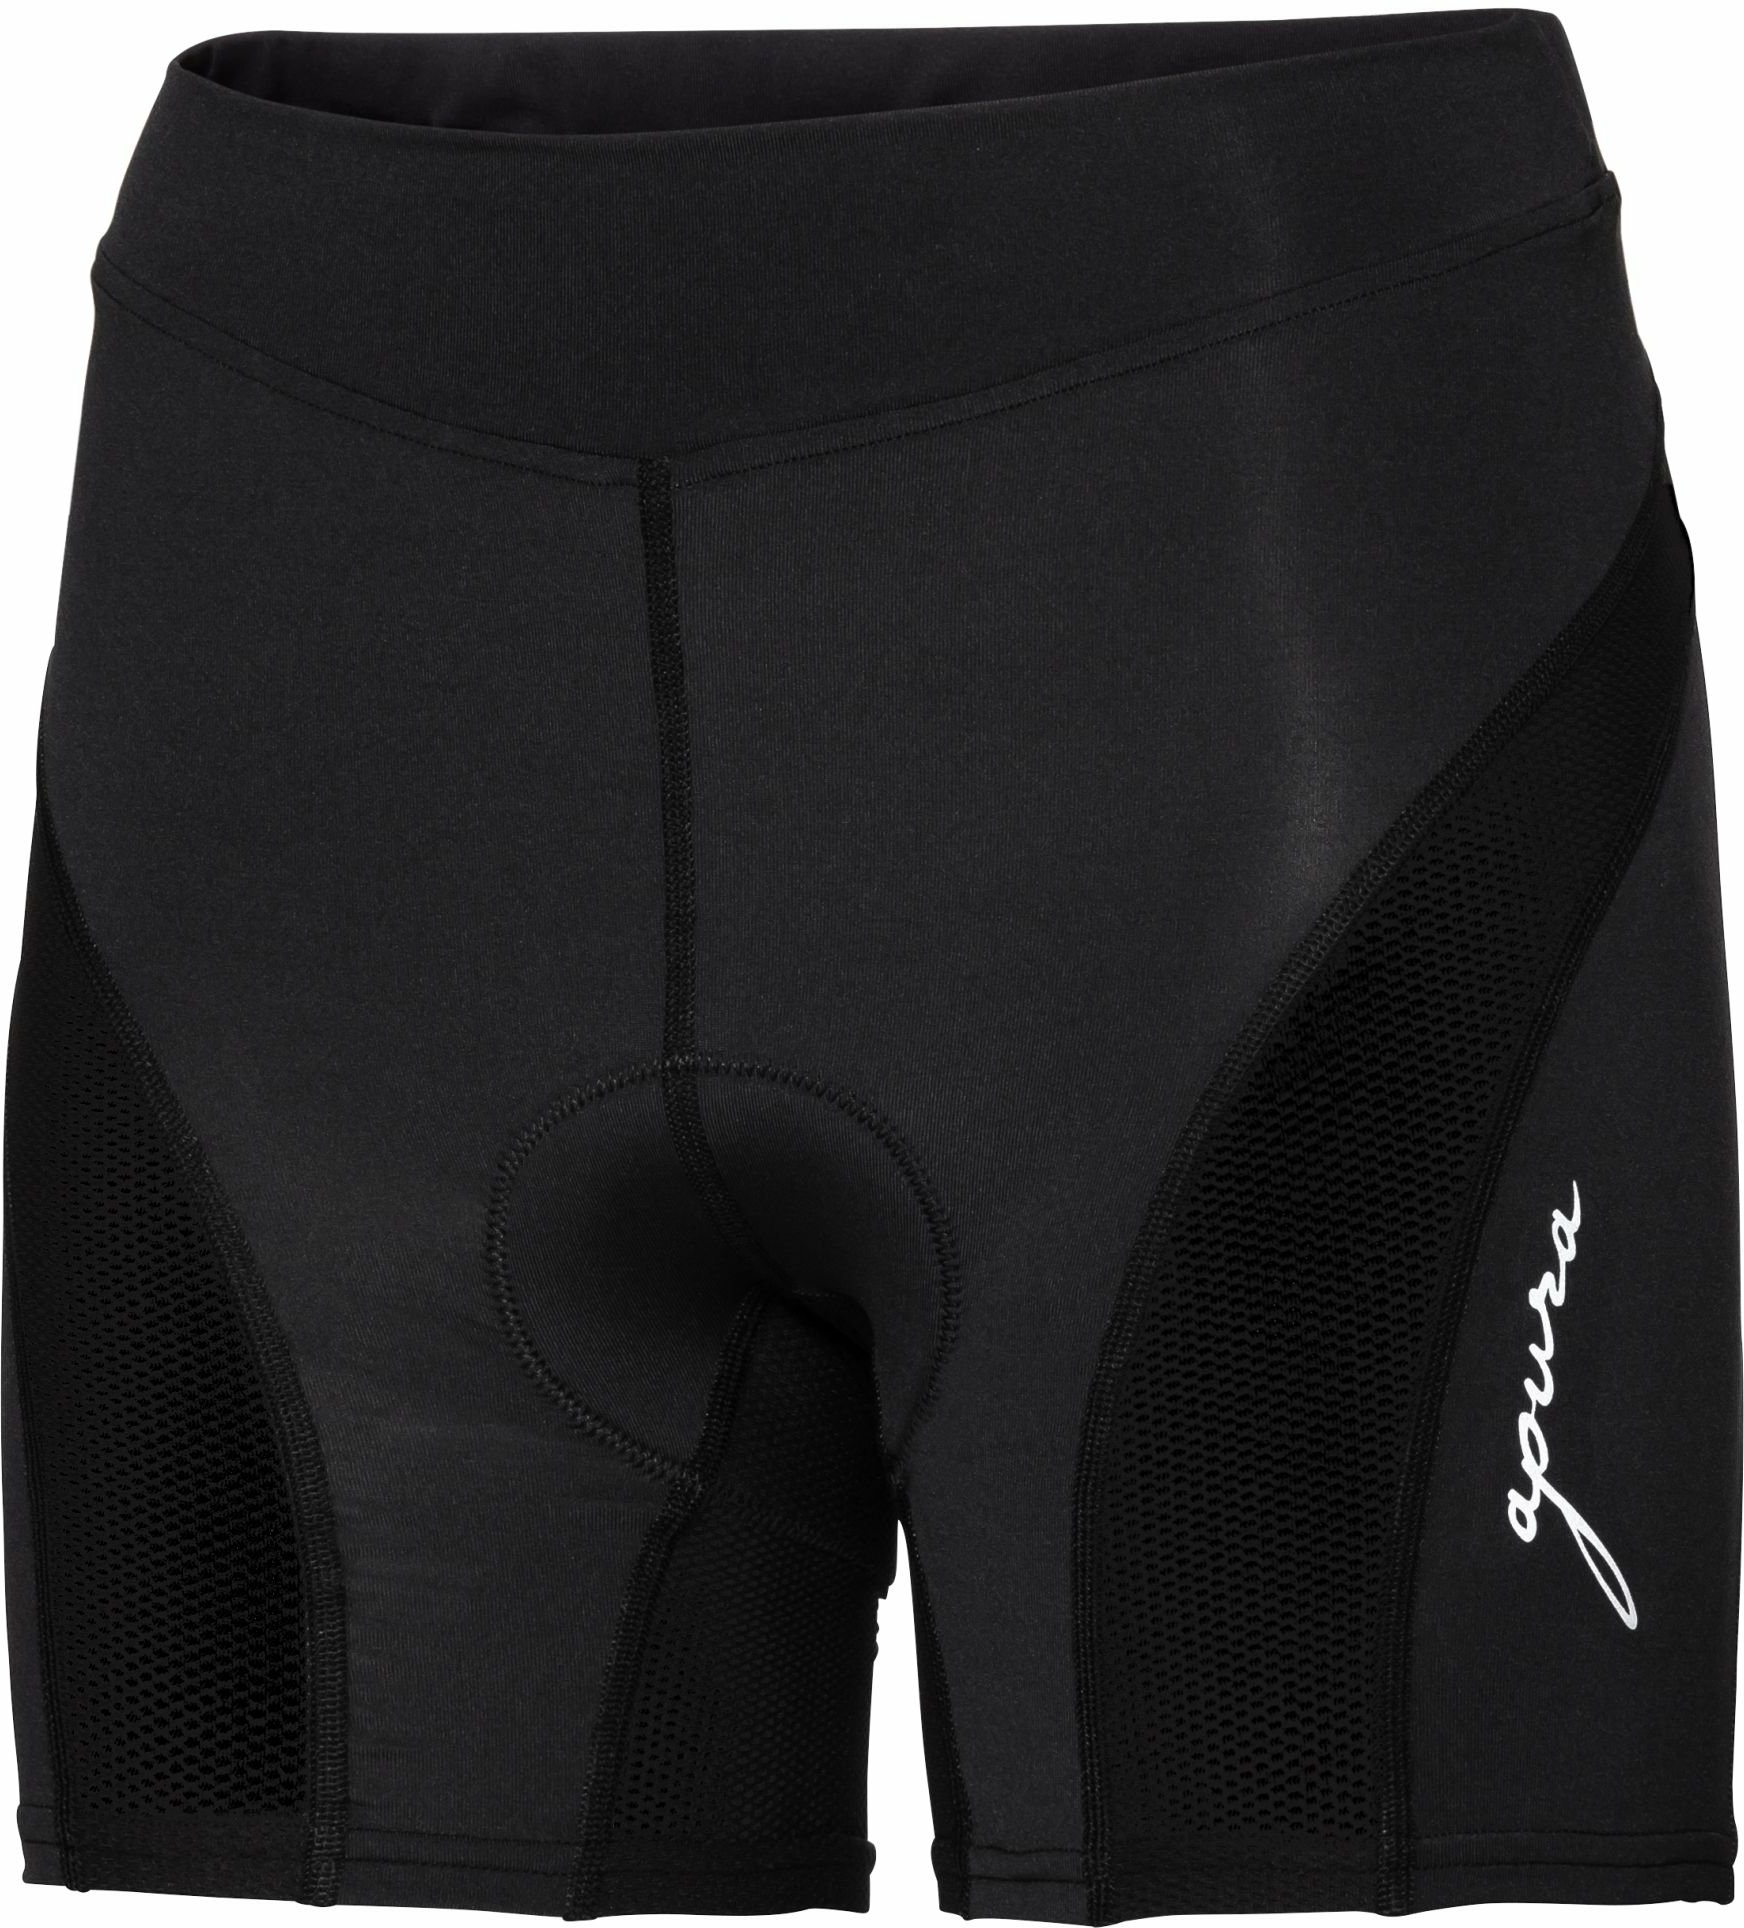 Bekleidung/Unterwäsche: Apura  Damen Unterhose Baselayer Shorts 2.0 M 